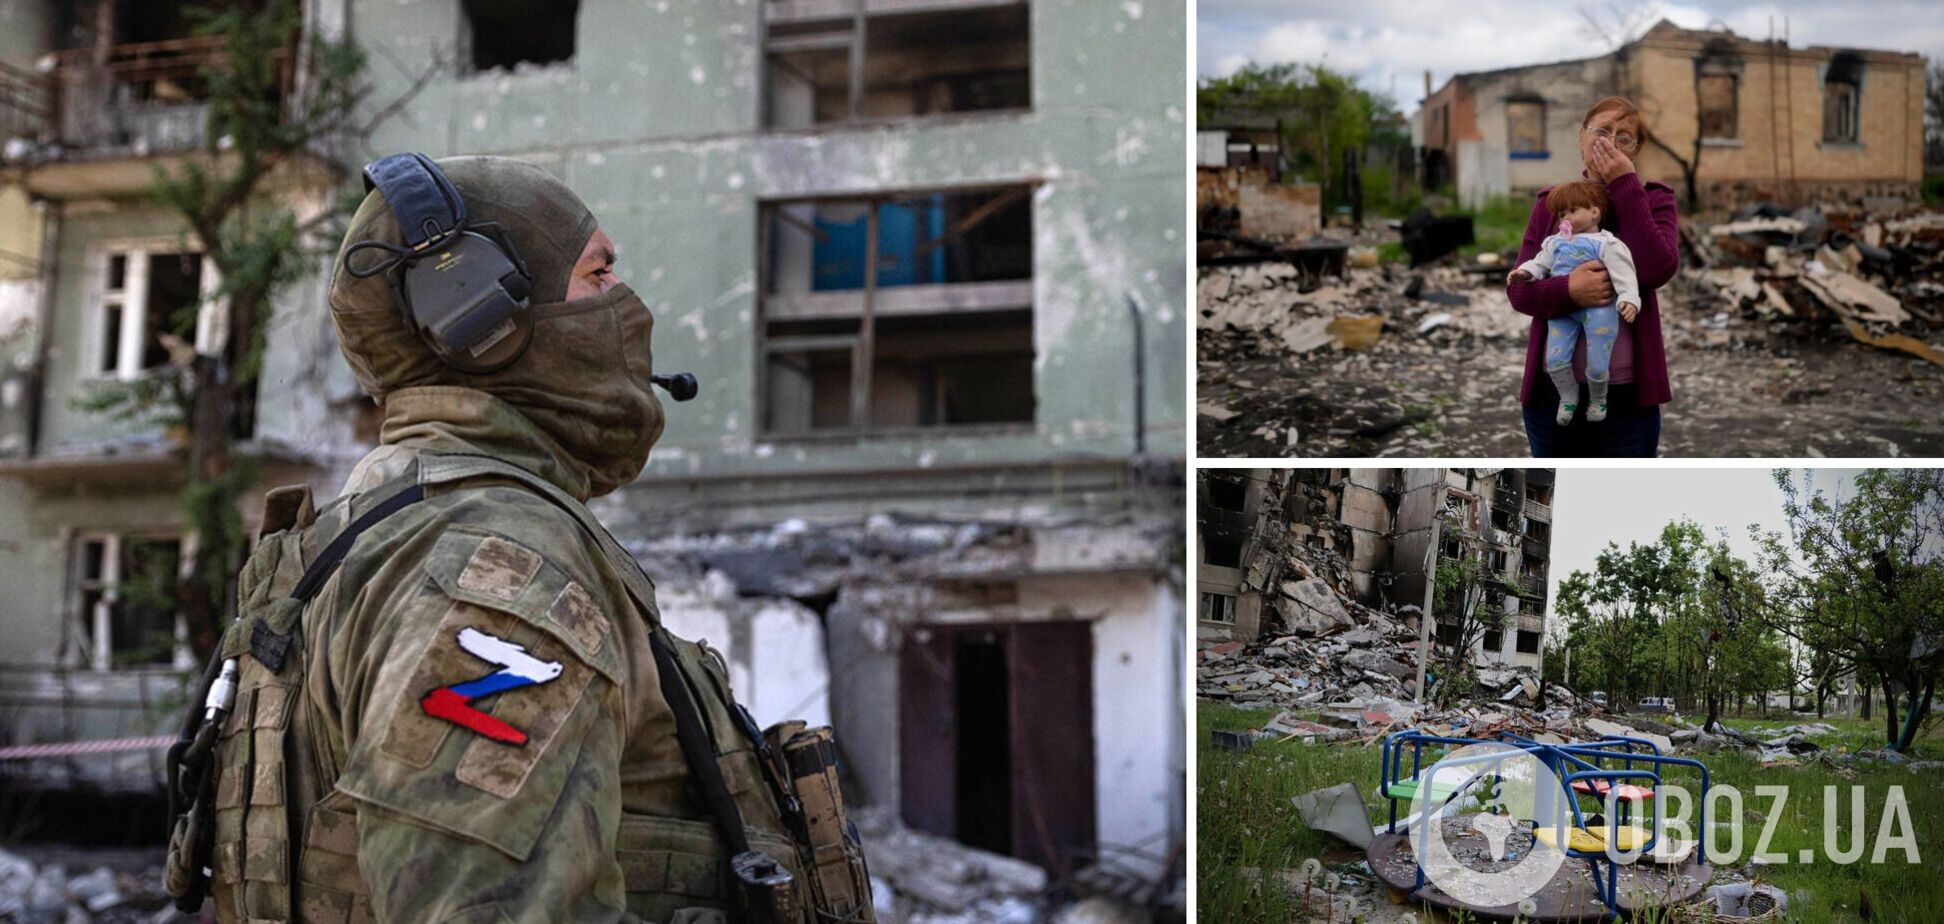 Оккупант рассказал сестре, как убивает мирных украинцев. Аудиоперехват разведки